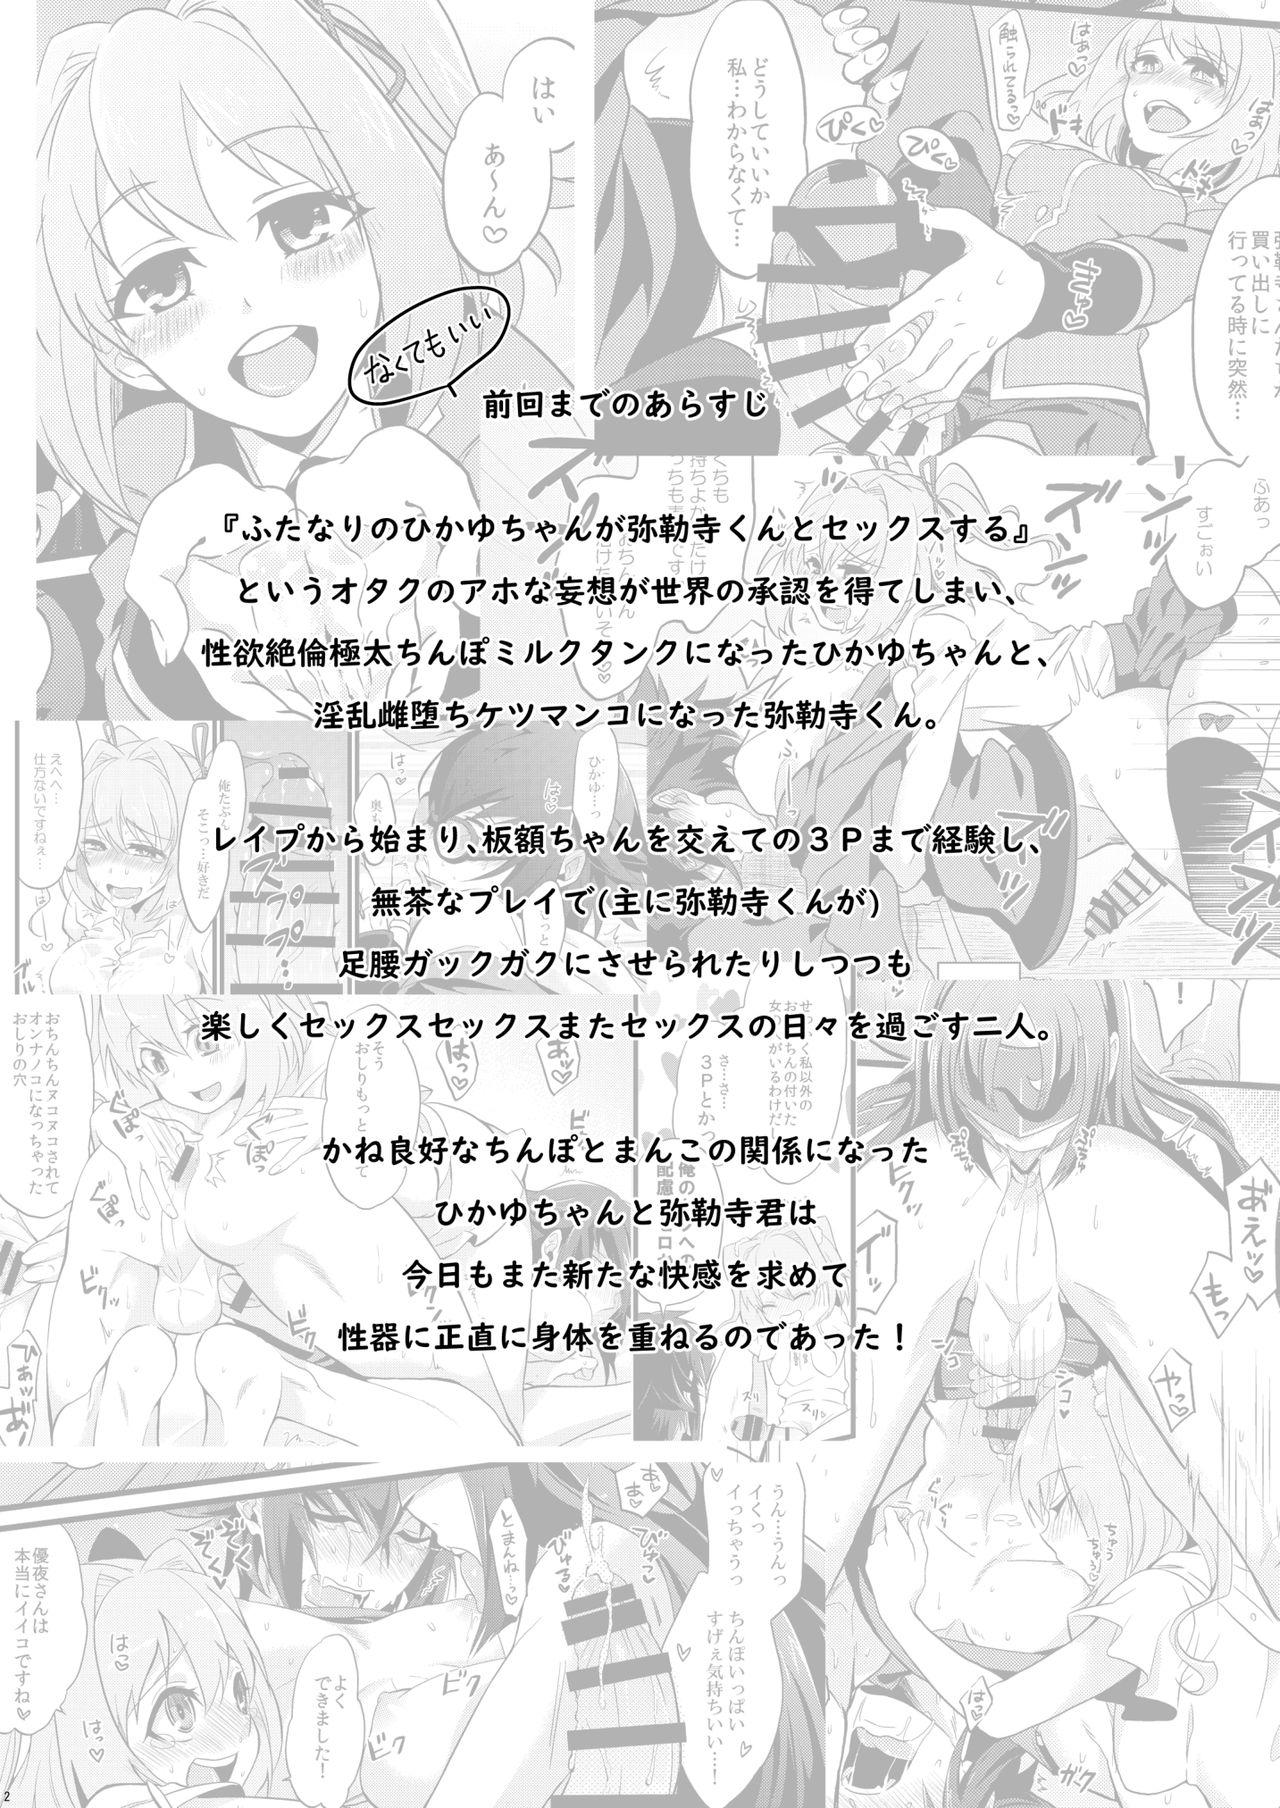 Job Shounin Itadakimashita 3 - Re creators Twistys - Page 4